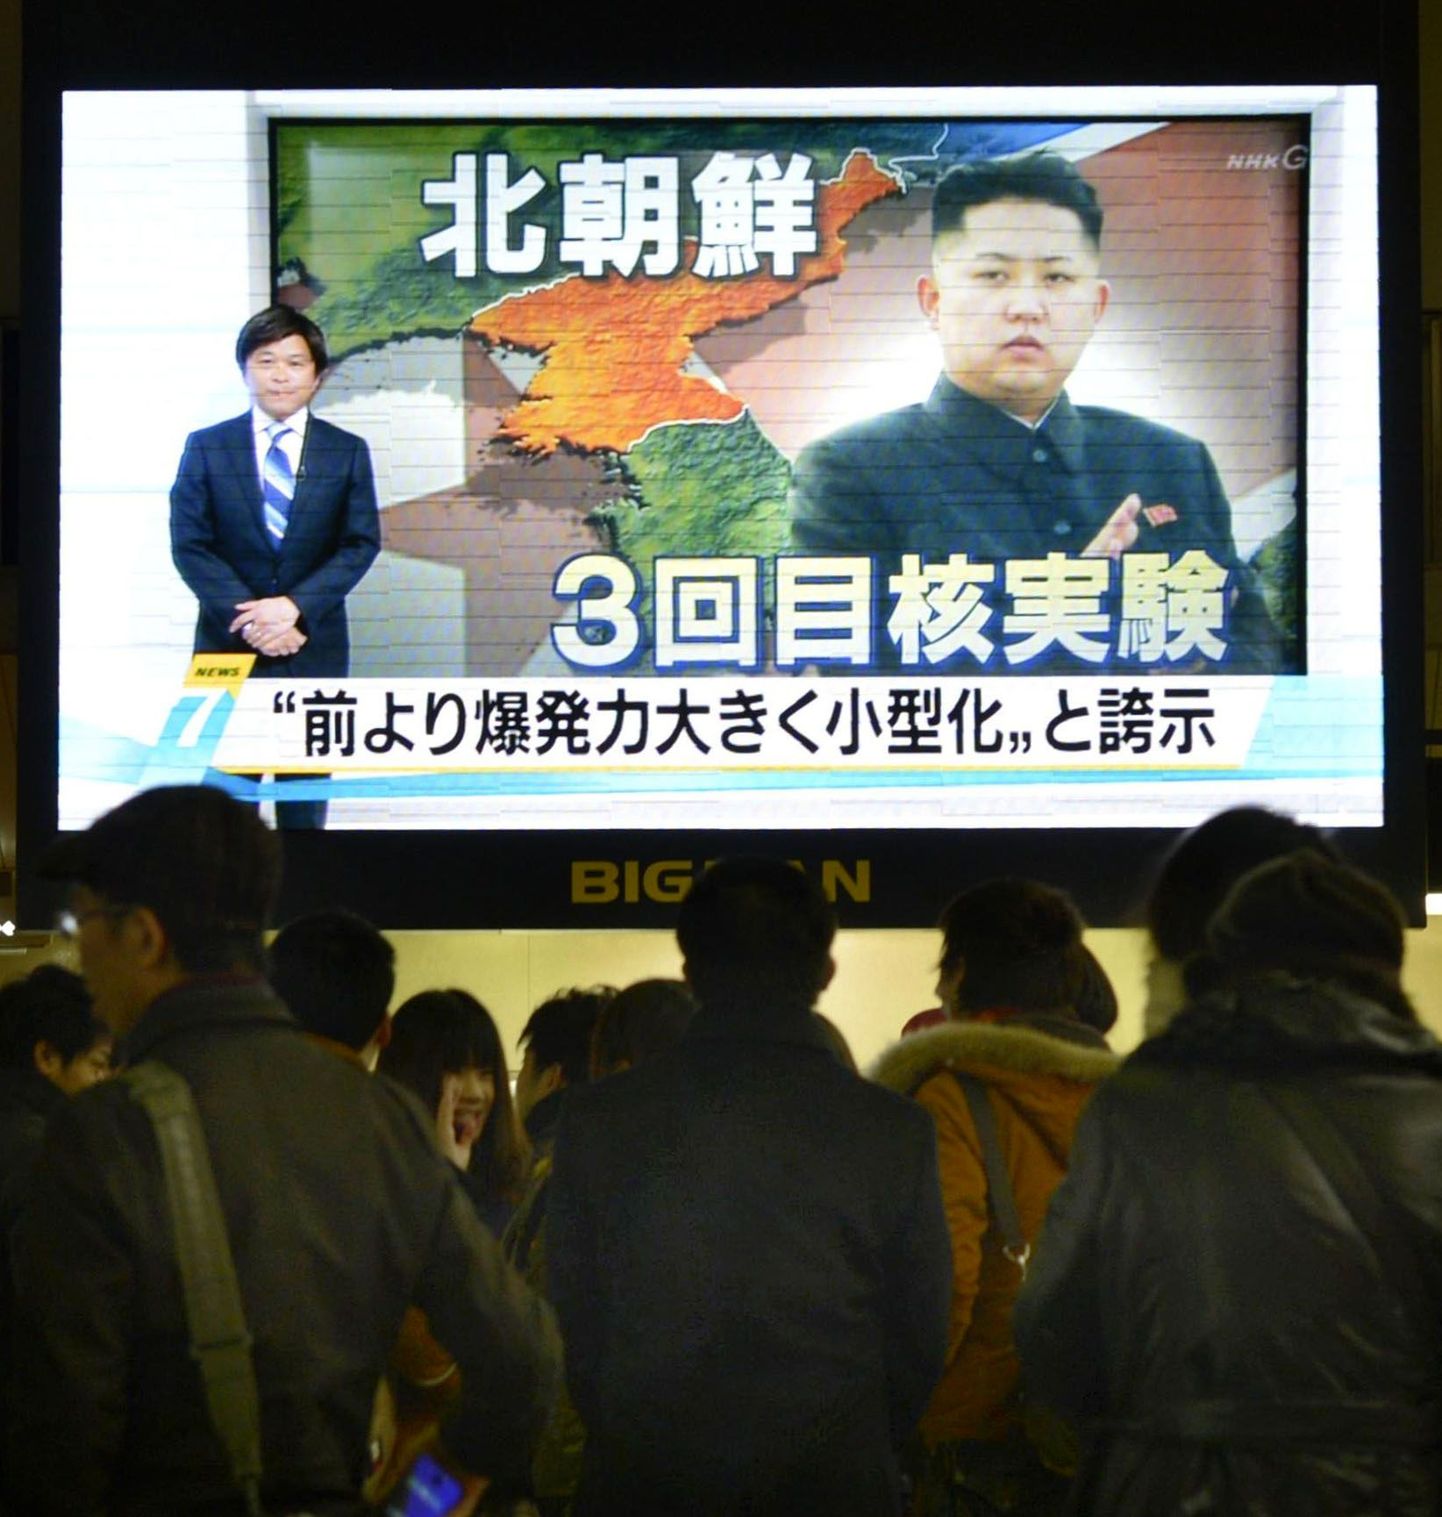 Inimesed Jaapanis Osakas vaatamas teleuudist Põhja-Korea tuumakatsetusest.